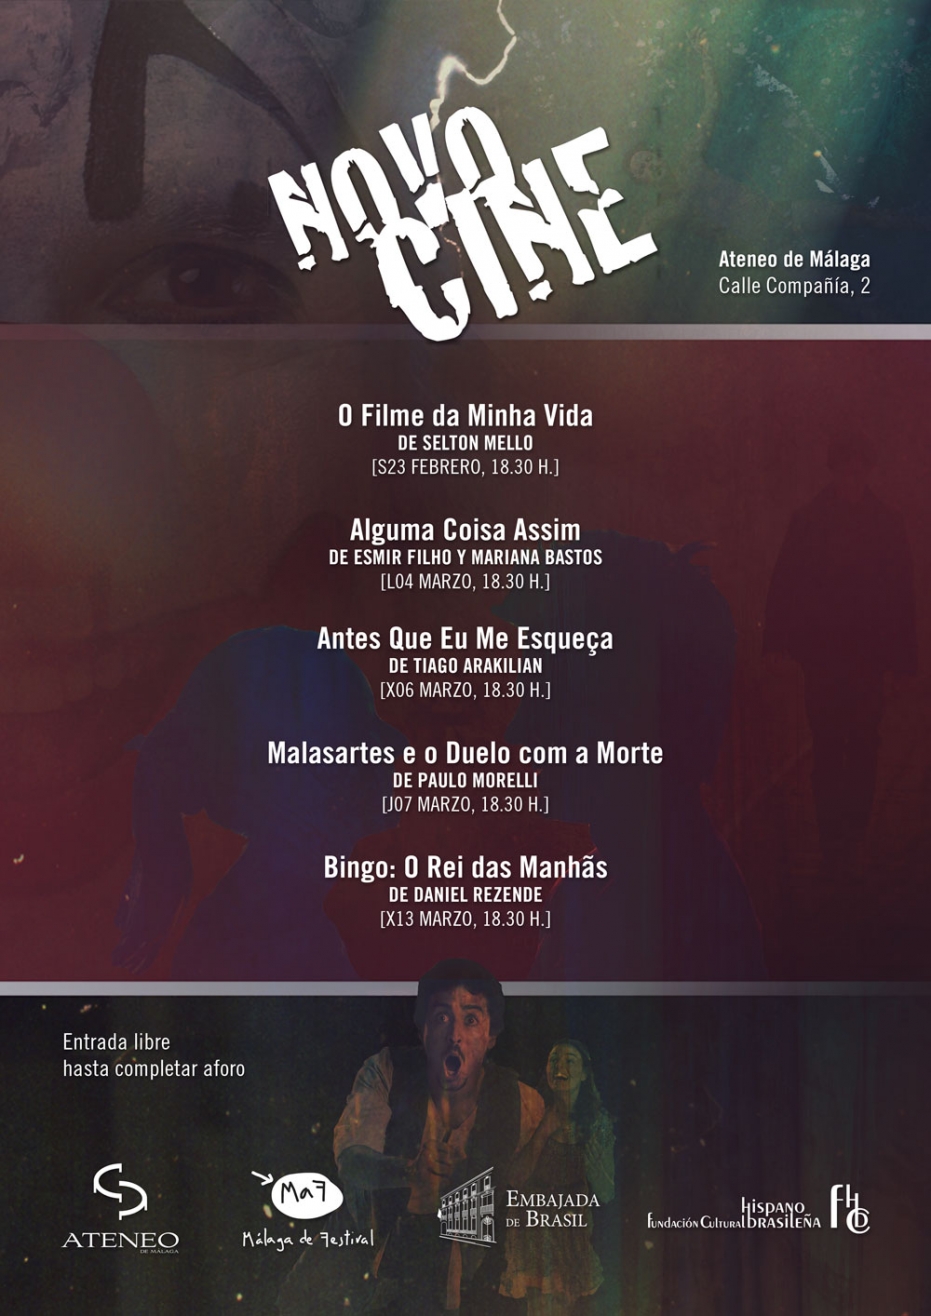 II Ciclo de Cine Novocine: proyección de Bingo: O Rei das Manhas, de Daniel Rezende. En colaboración con la Embajada de Brasil y la Fundación Cultural Hispano Brasileña